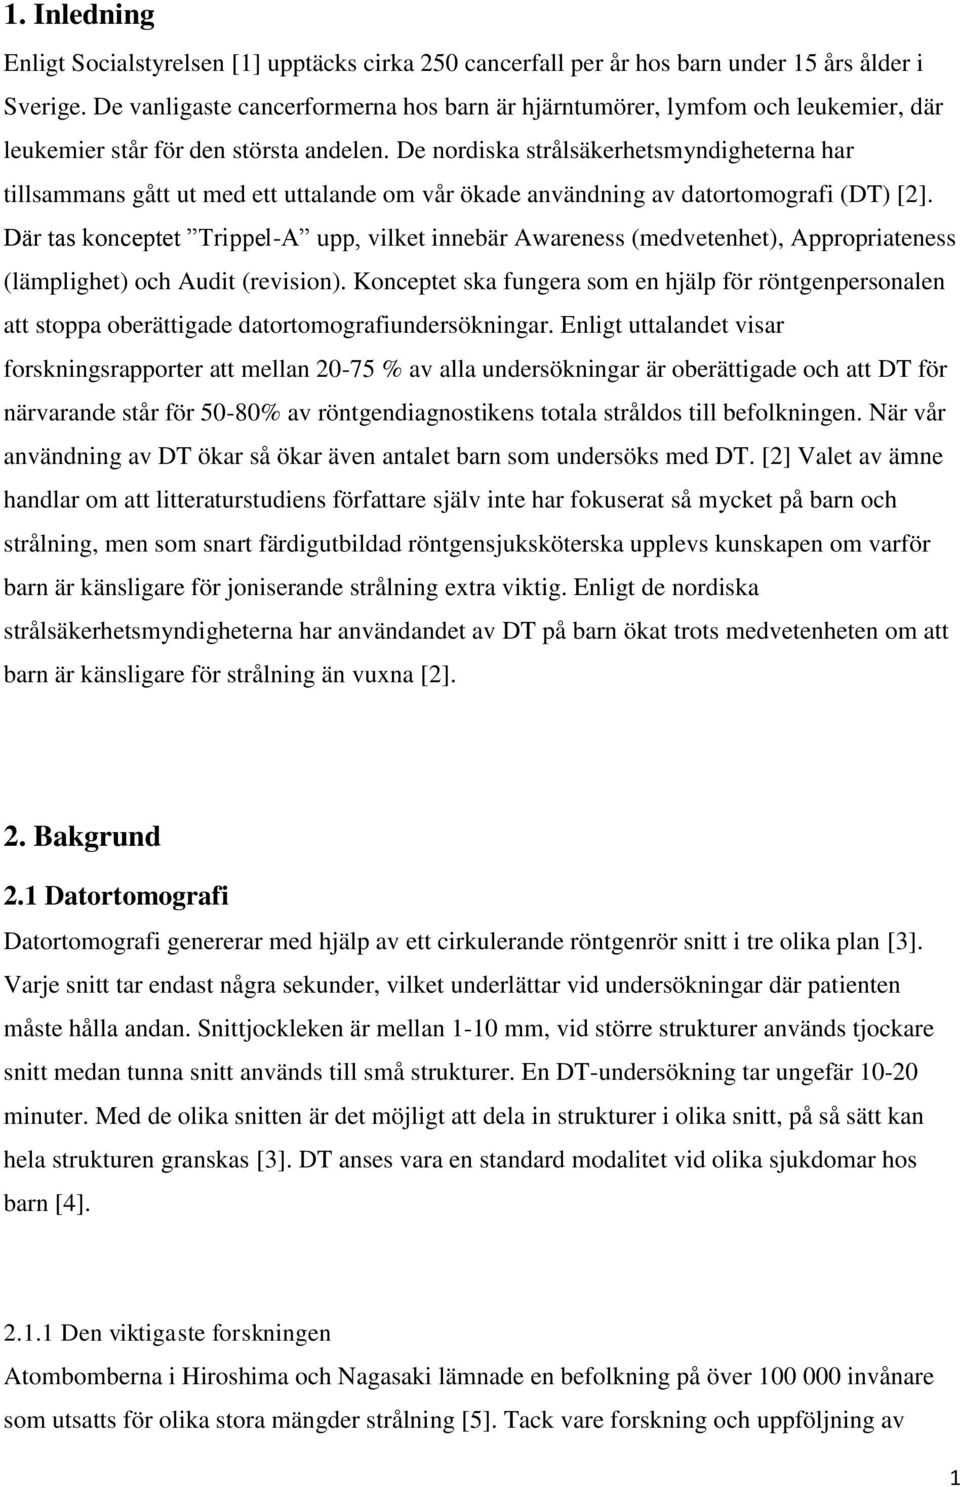 De nordiska strålsäkerhetsmyndigheterna har tillsammans gått ut med ett uttalande om vår ökade användning av datortomografi (DT) [2].